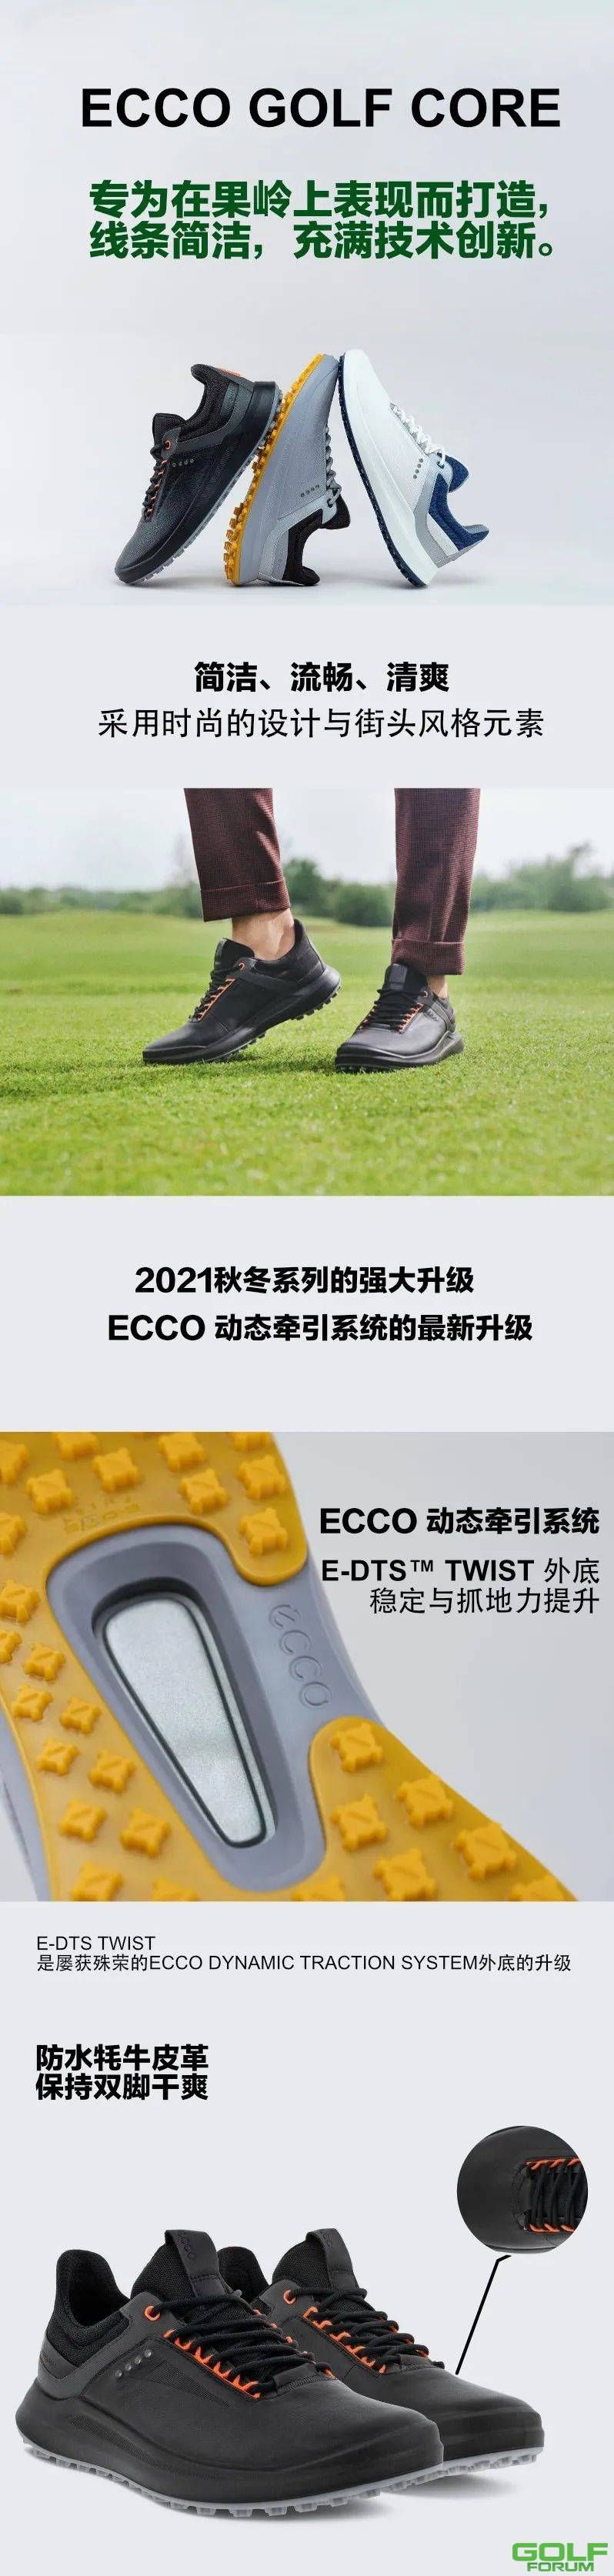 「ECCO新品特卖」1799元起/男子高尔夫CORE球鞋2021秋冬新品 ...